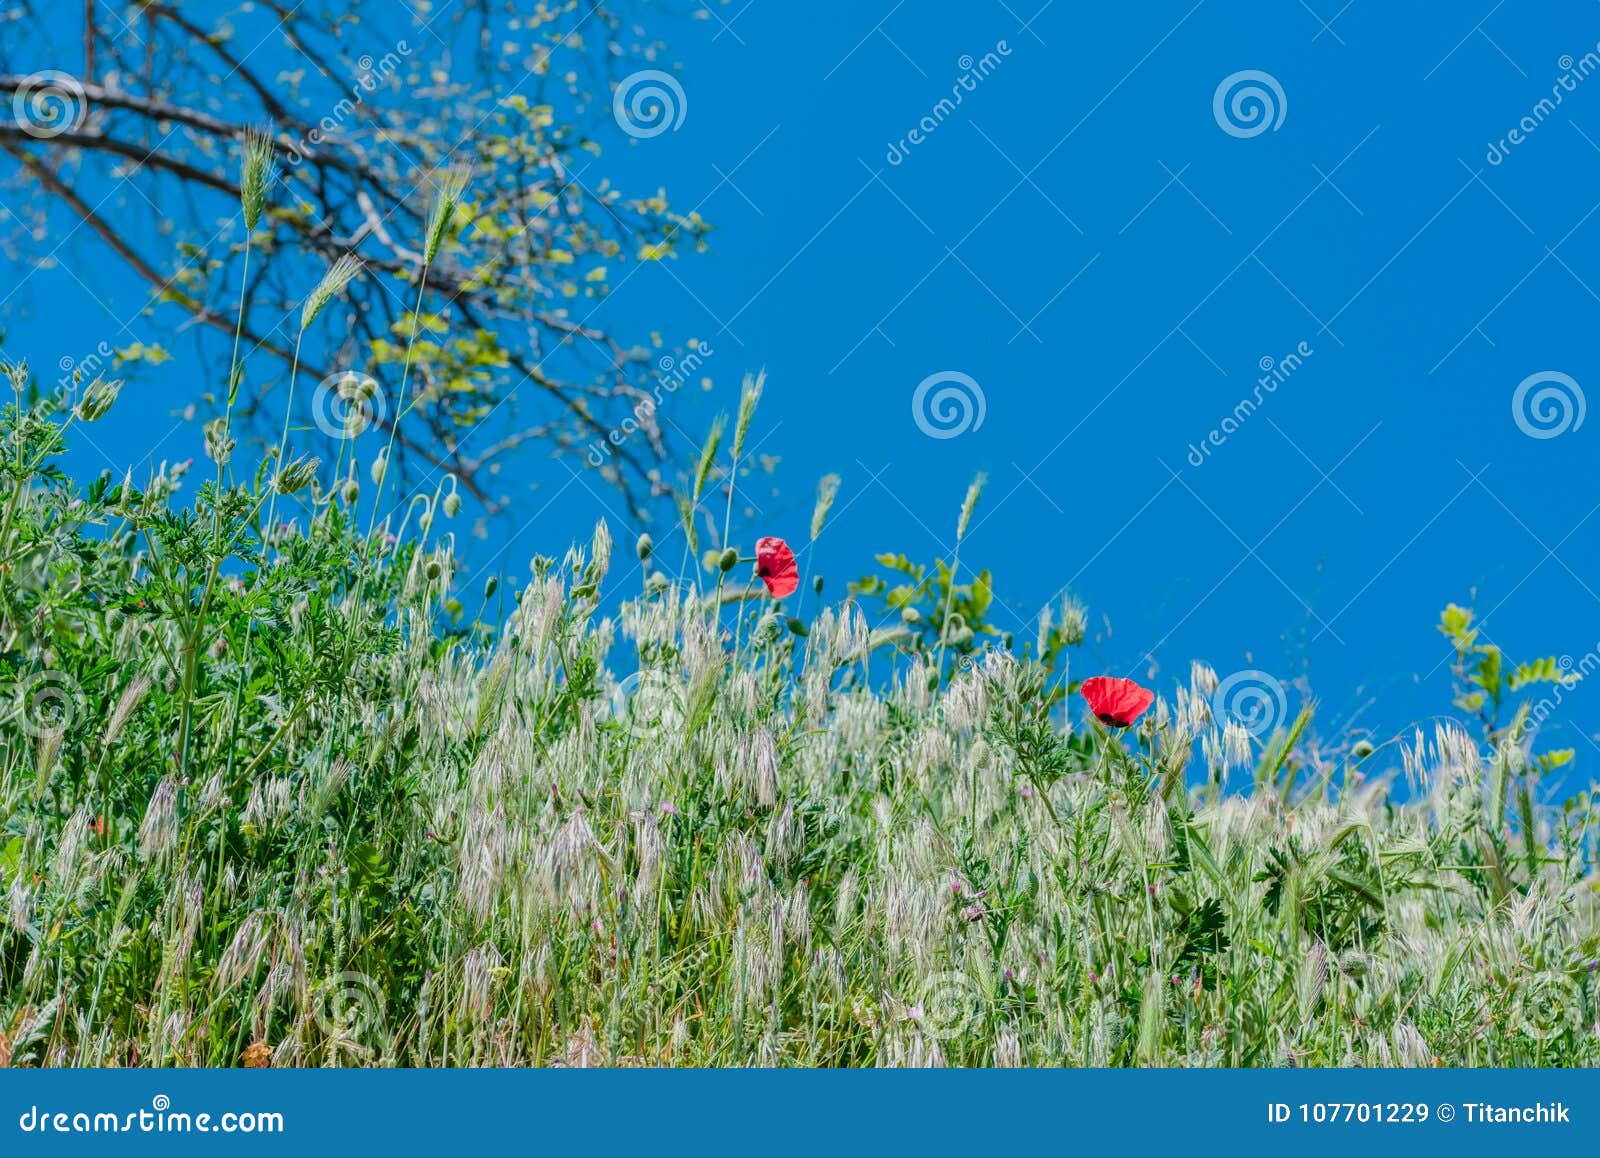 De rode papaver van de landschapsaard. De bloemen van de landschapsaard van rode papaver op achtergrond van groen gras